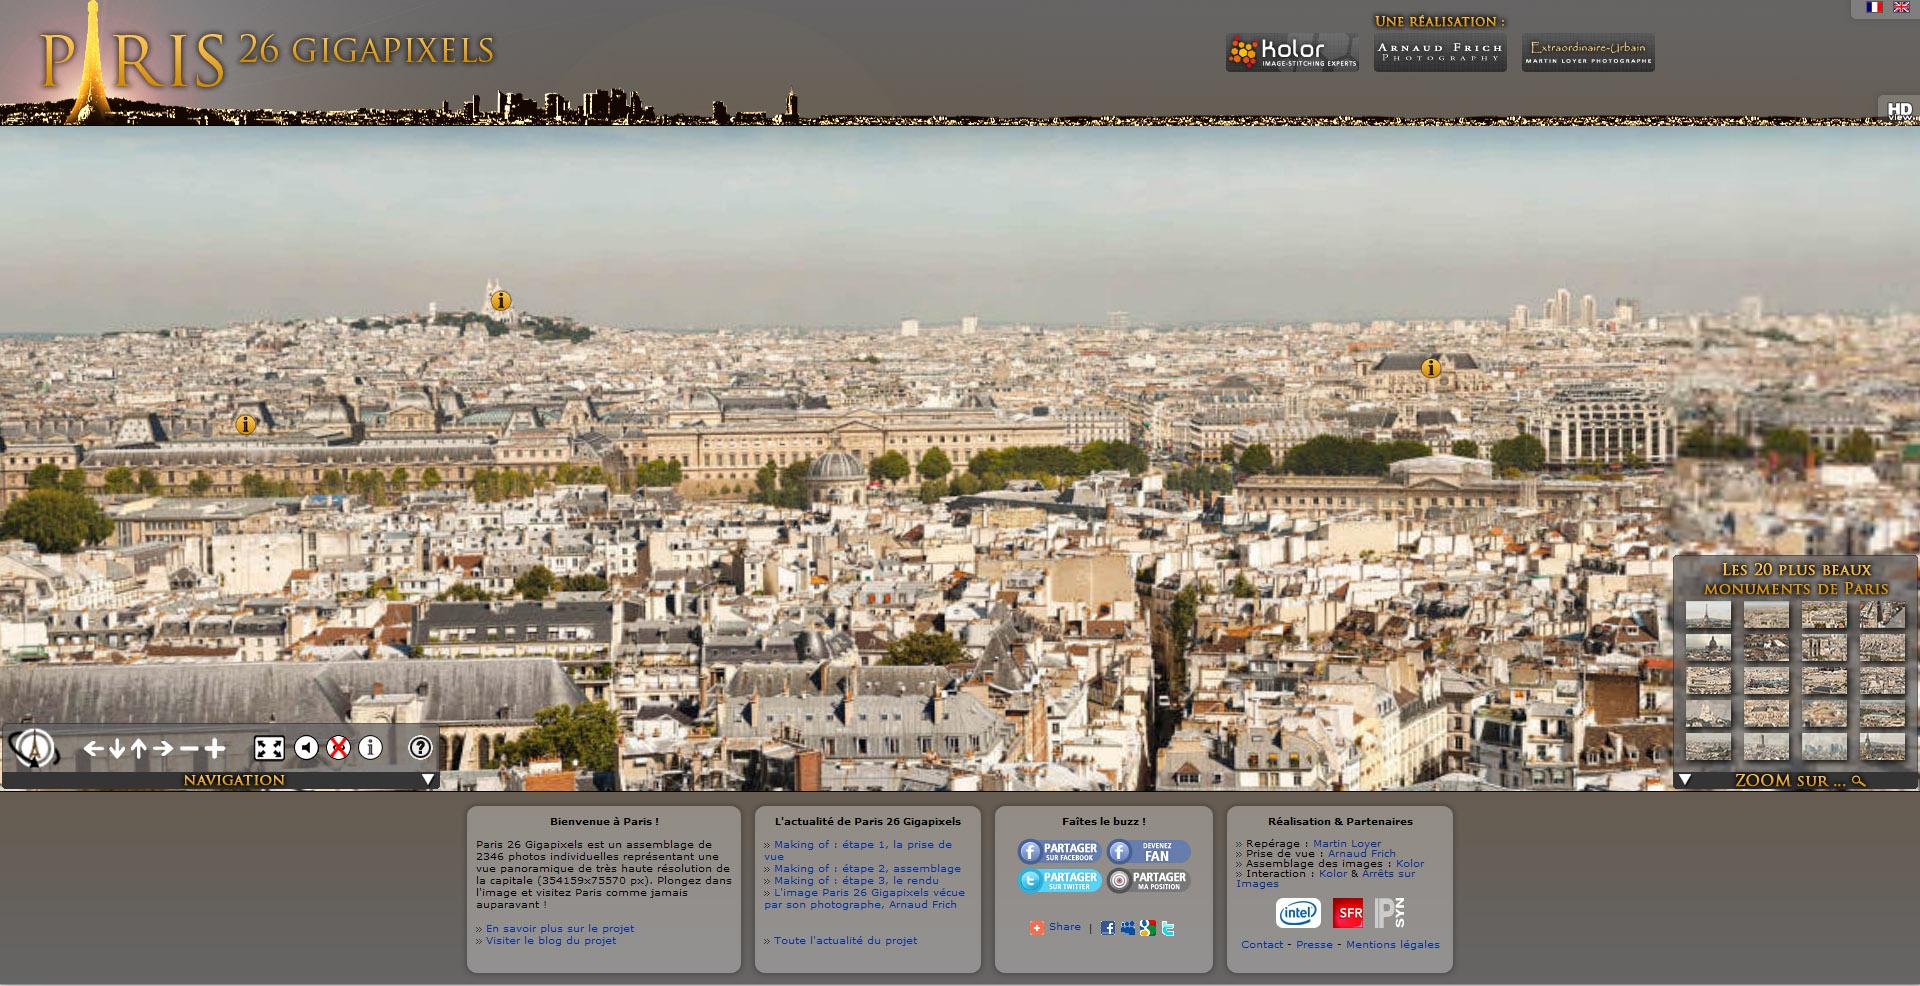 ... panoramique de Paris 26 gigapixels est officiellement devenu la plus